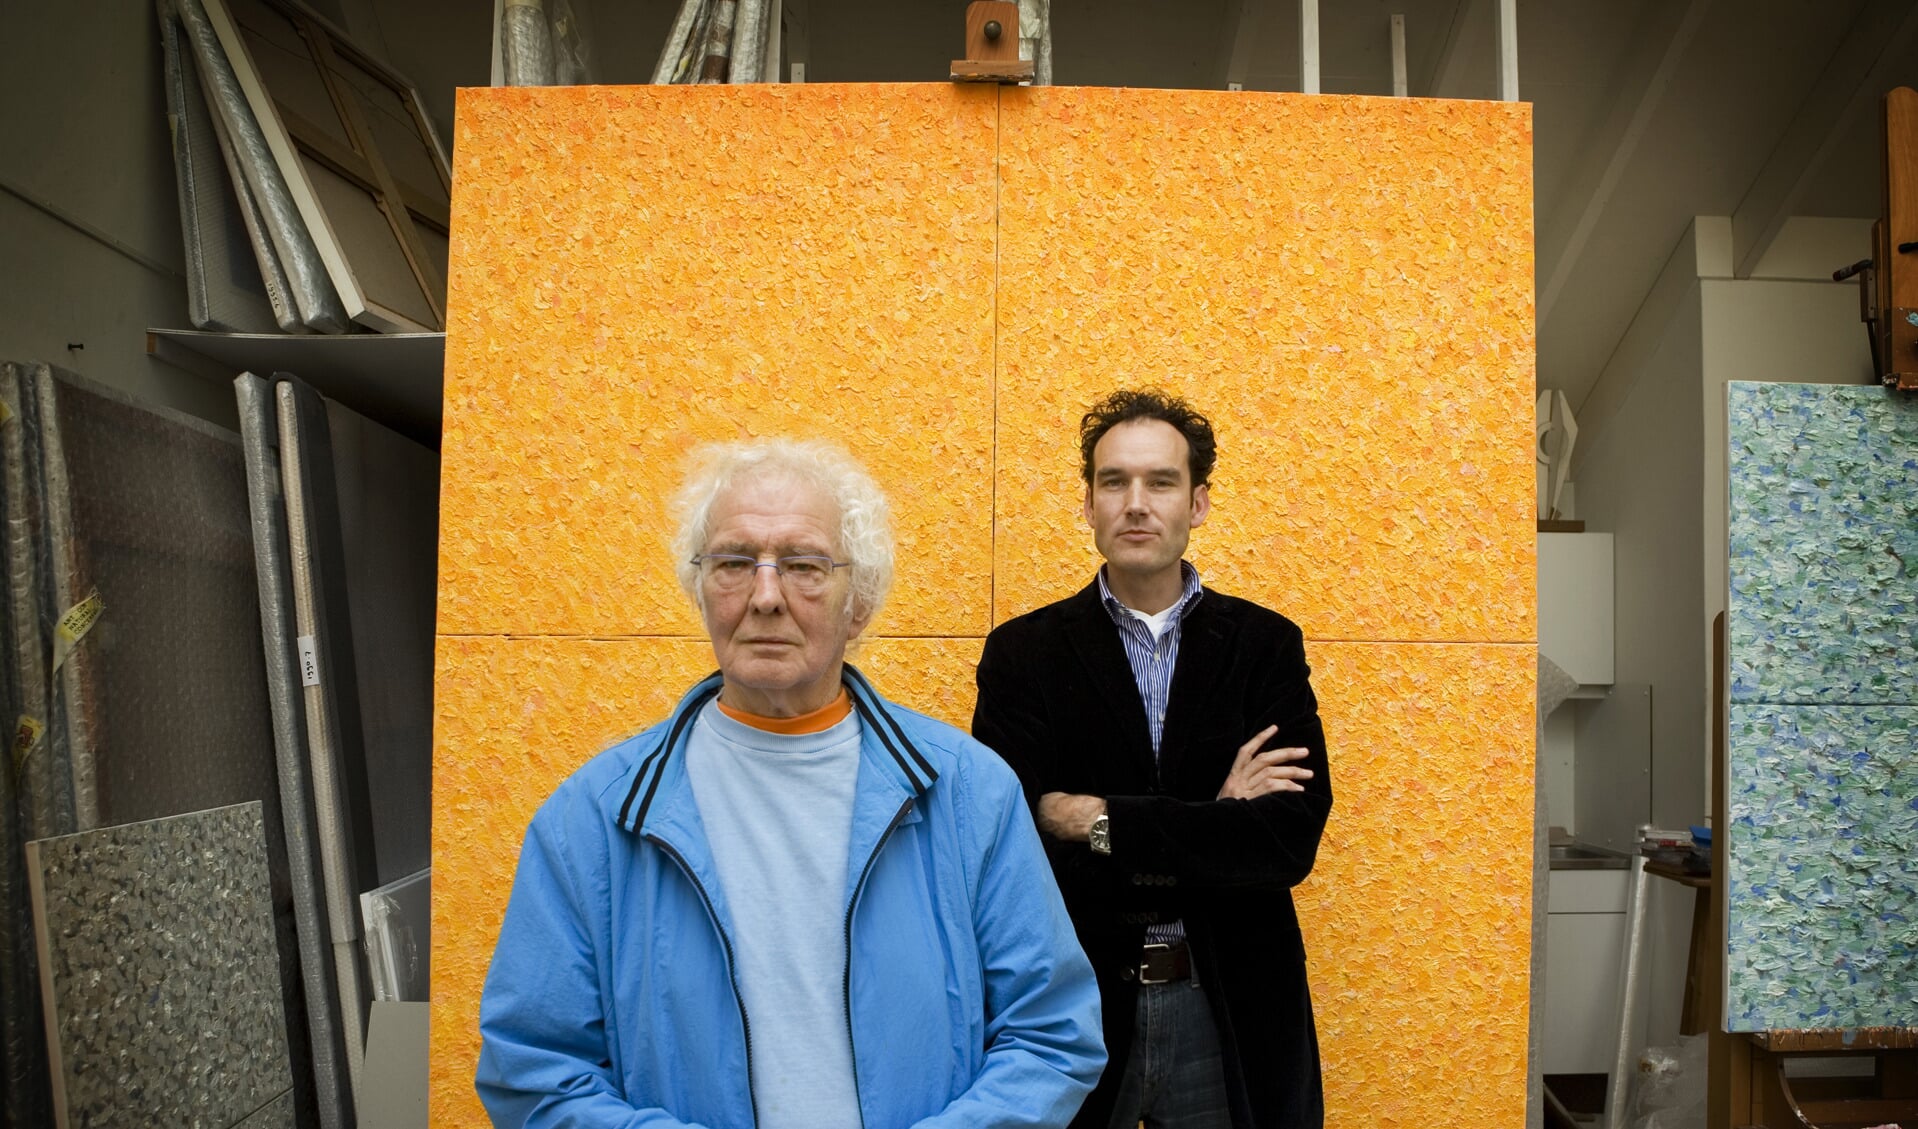 Jan Wolkers en Onno Blom voor ‘het grote gele doek’ | Foto Tessa Posthuma de Boer